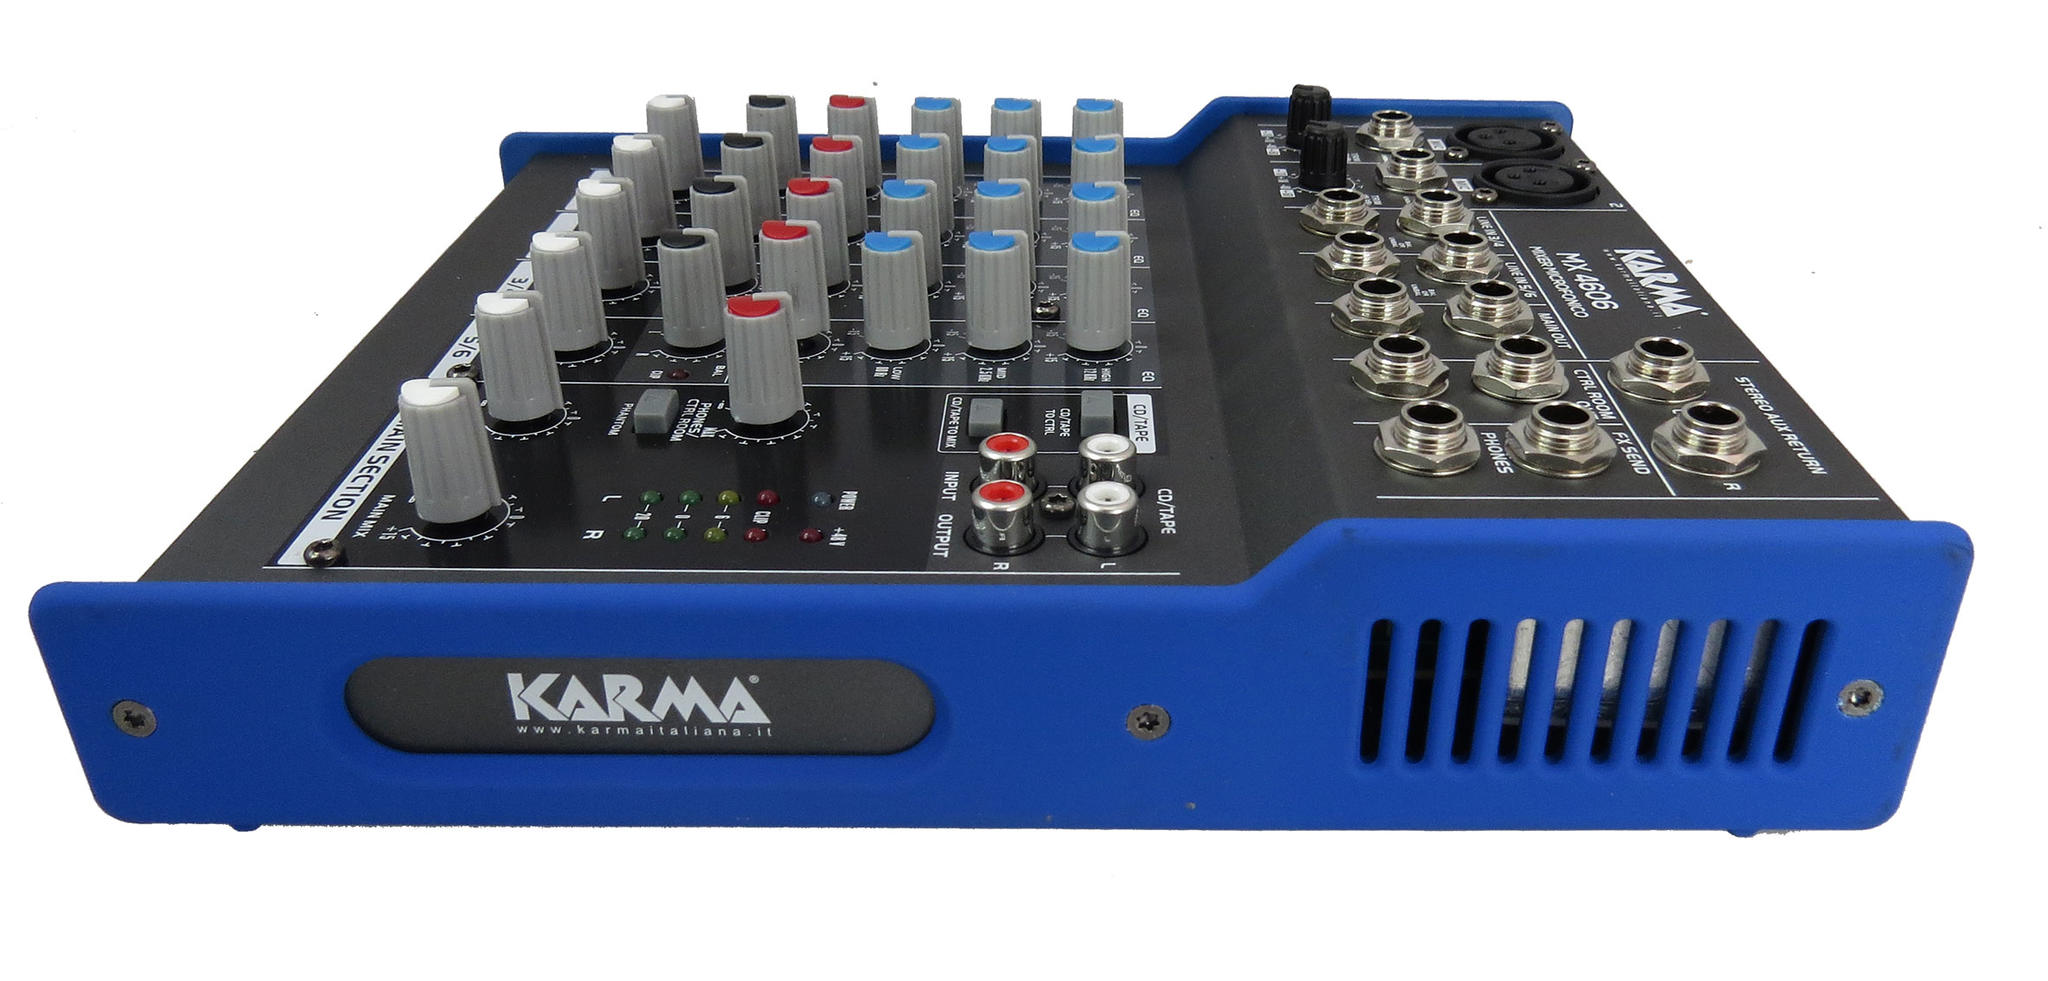 Karma MX 4606